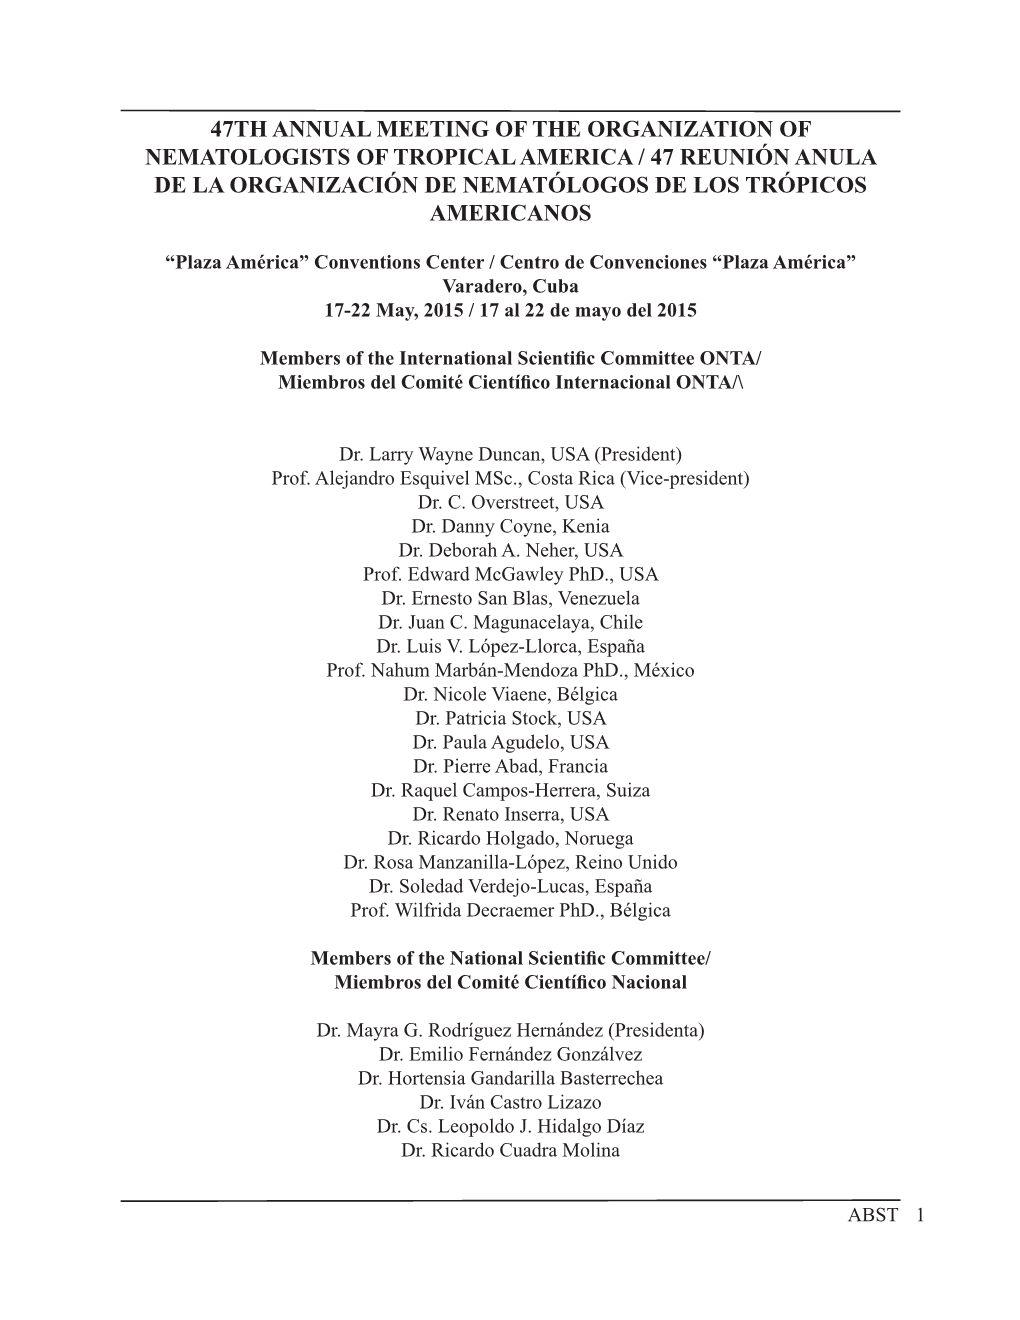 47Th Annual Meeting of the Organization of Nematologists of Tropical America / 47 Reunión Anula De La Organización De Nematólogos De Los Trópicos Americanos